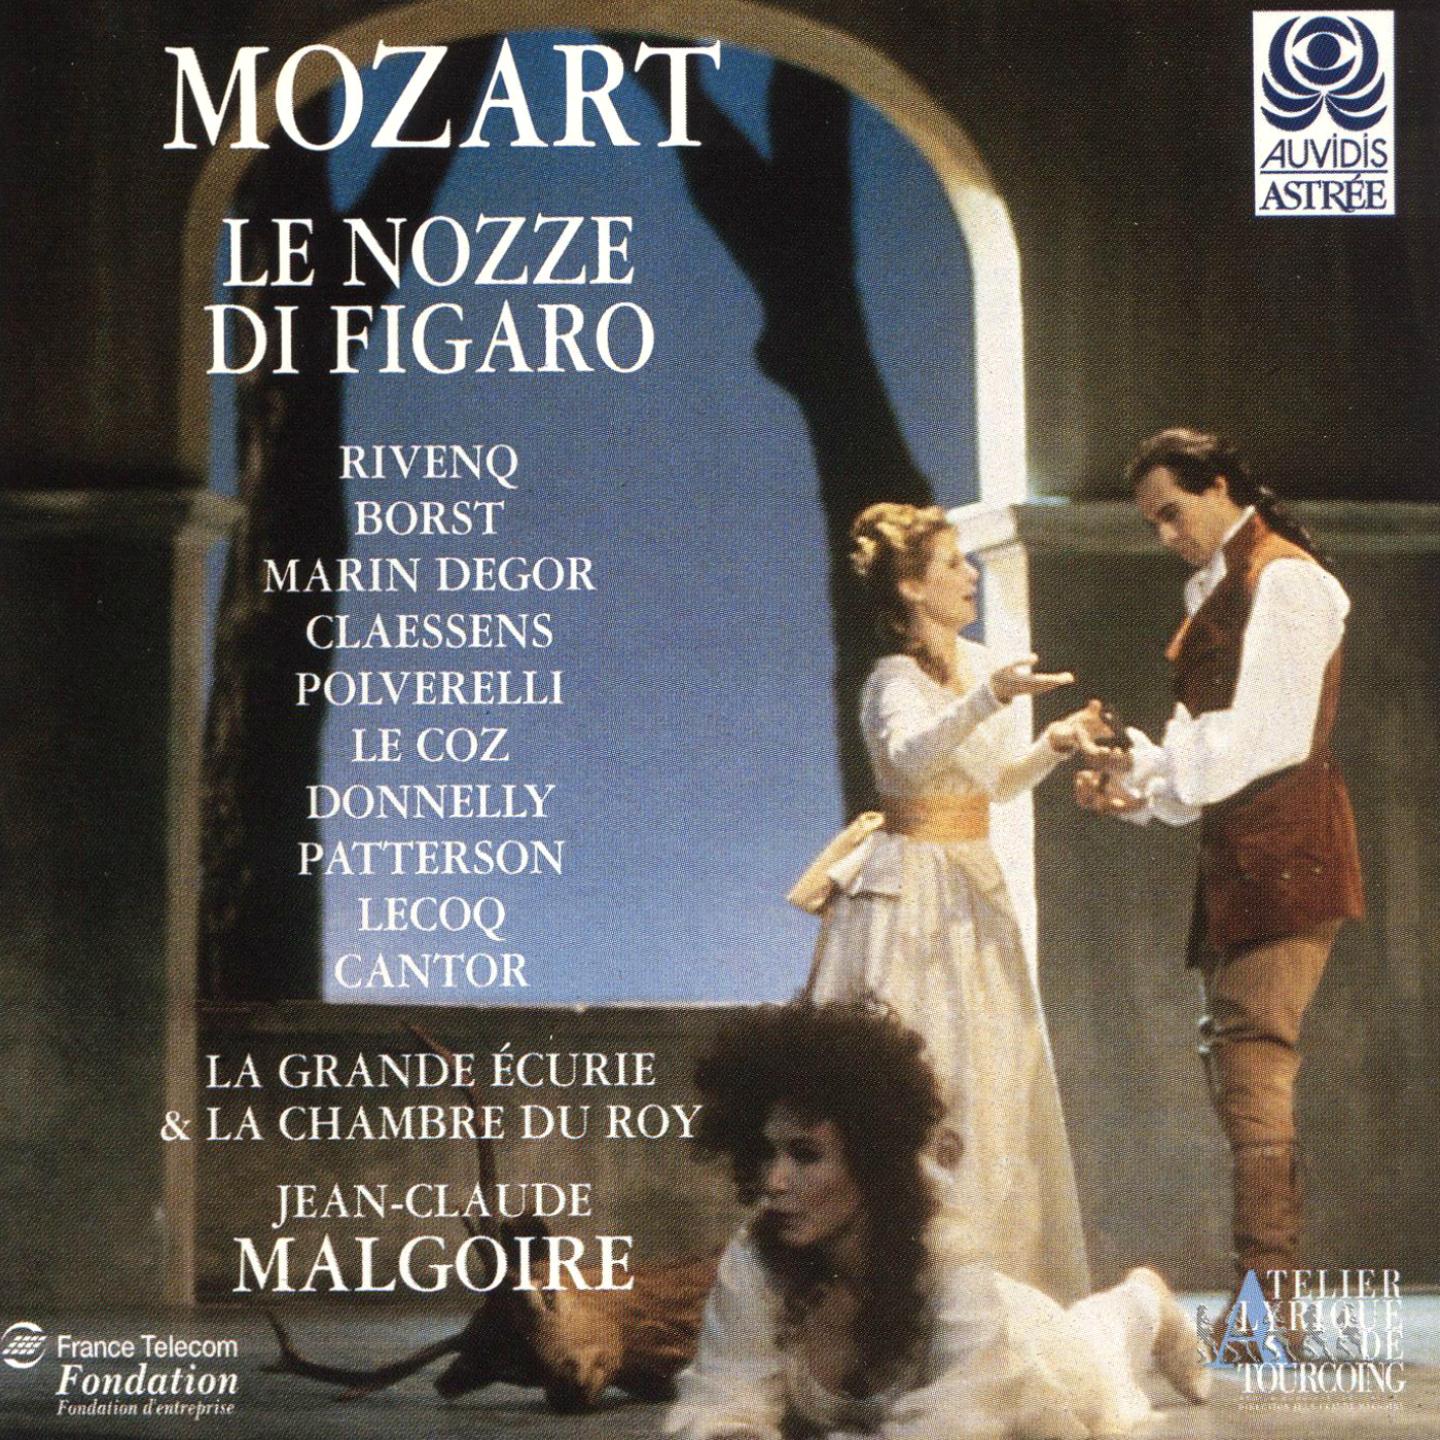 Le nozze di Figaro, K. 492, Act I: Basilio, in traccia tosto di Figaro volate (Il Conte, Susanna, Cherubino, Basilio)